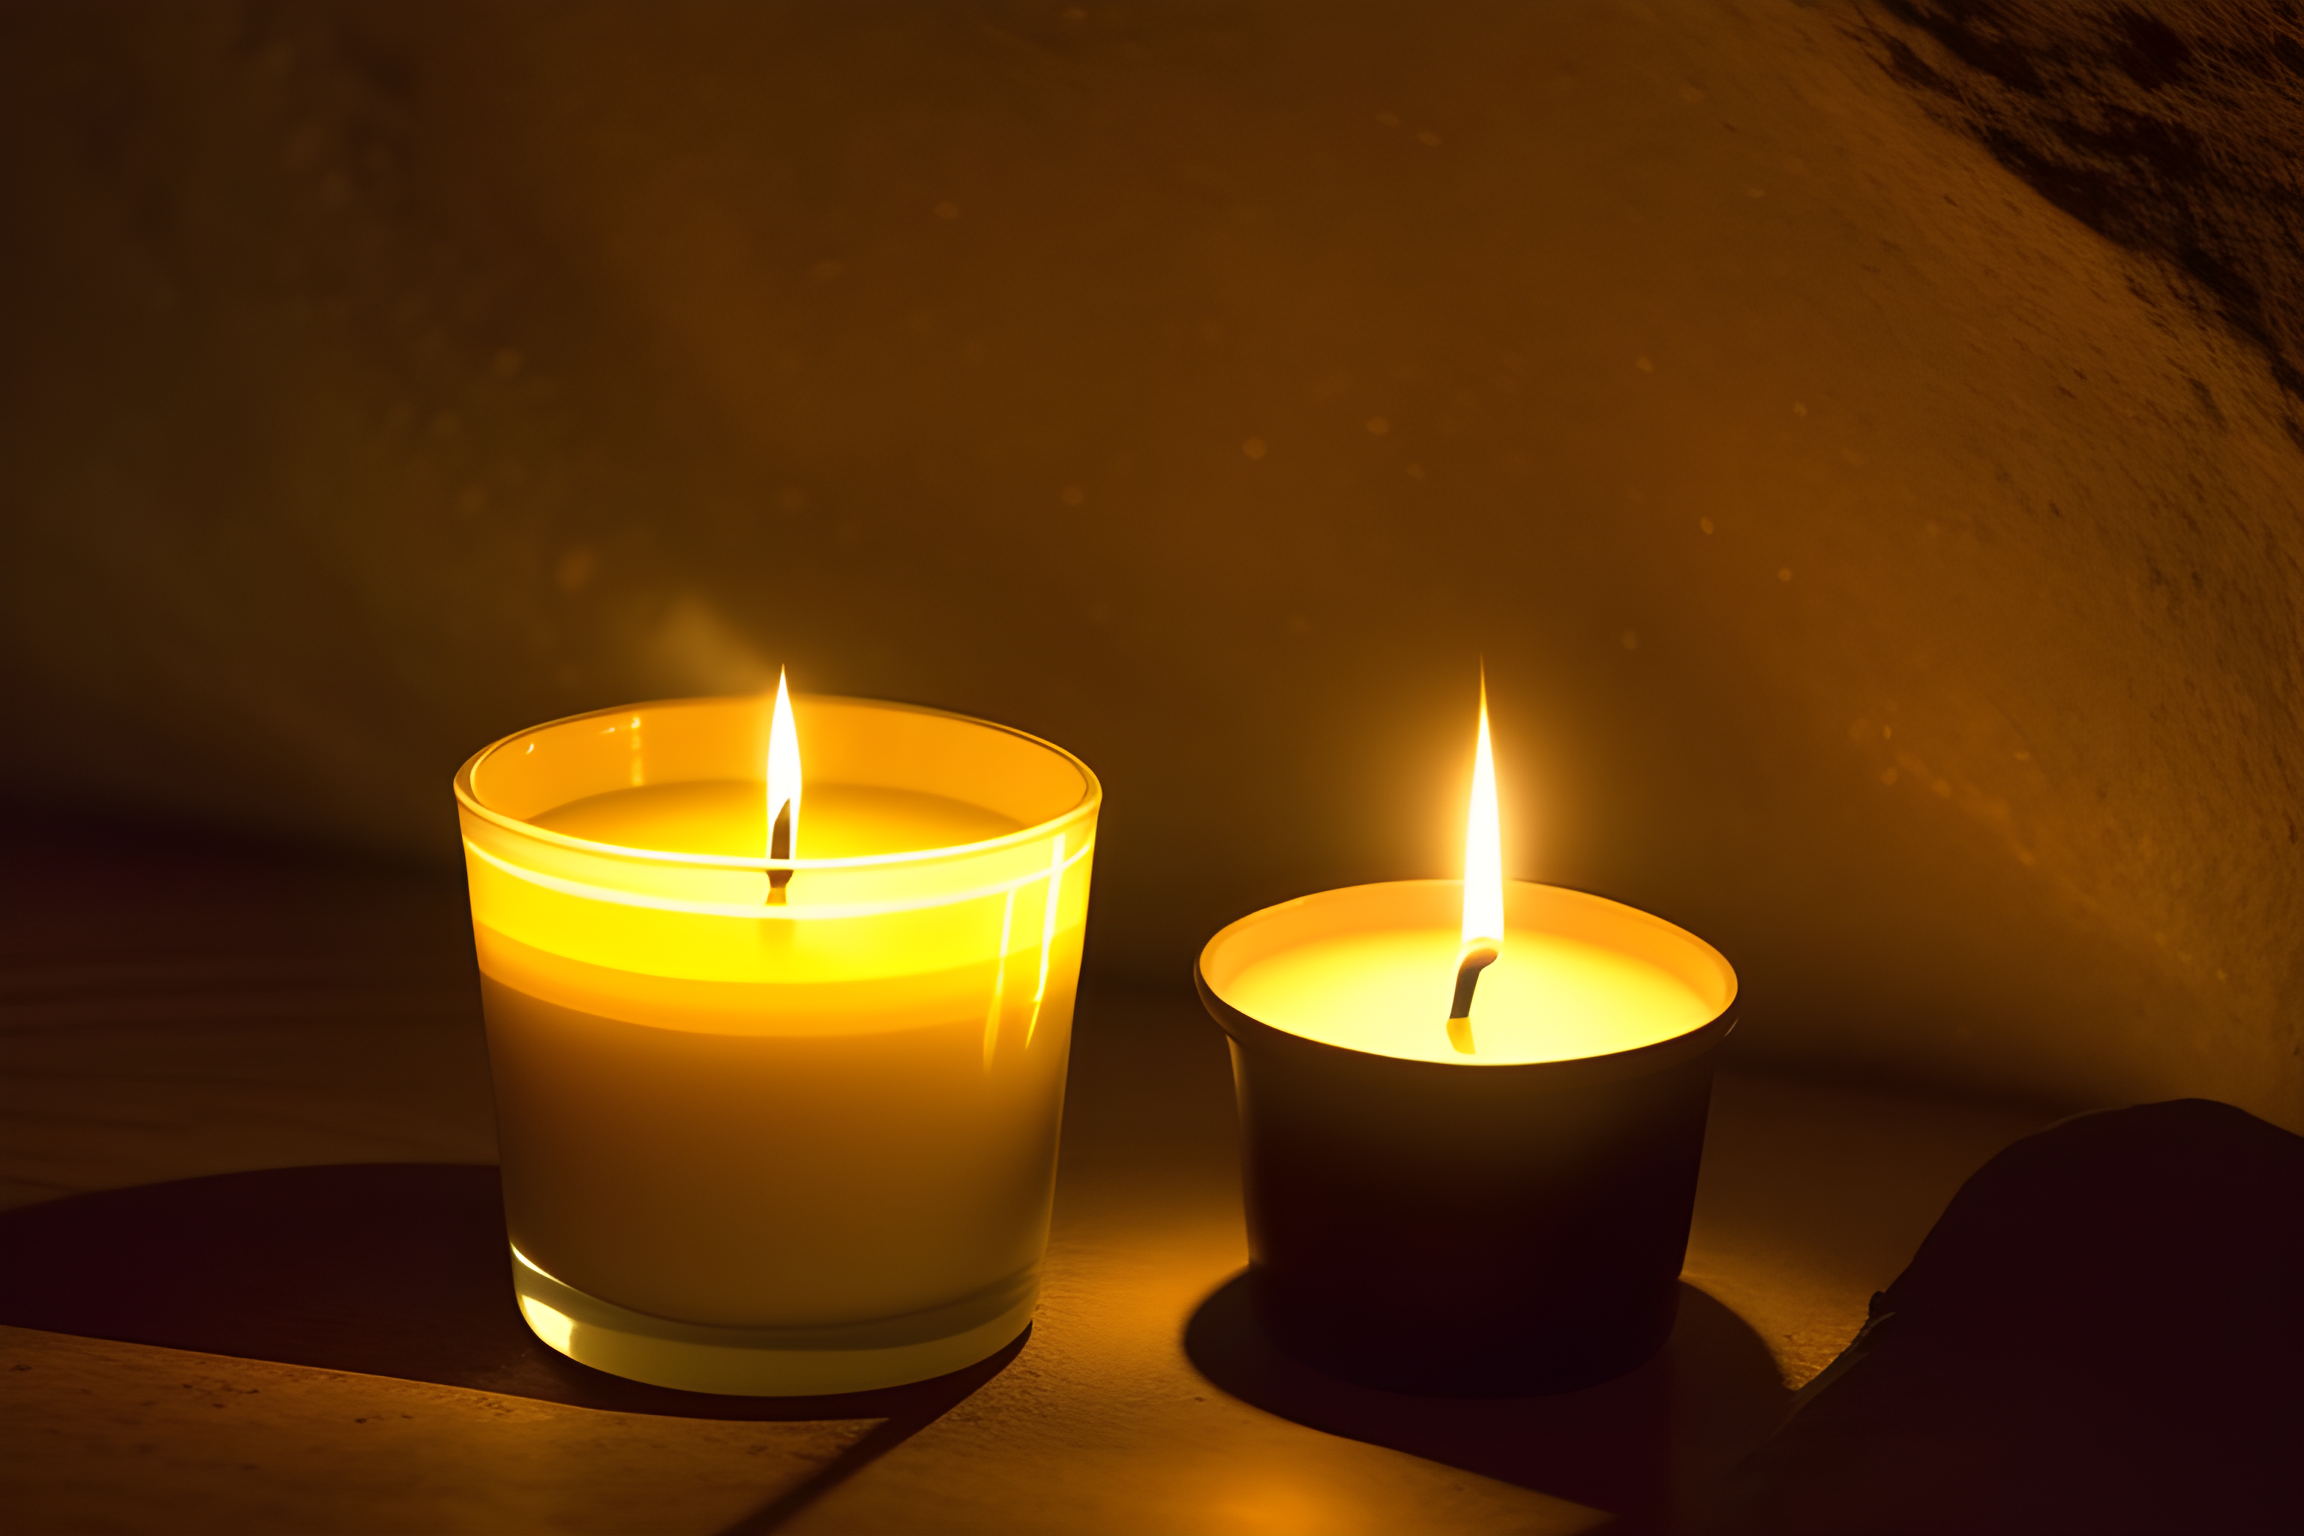 FootballR - NFL - Zwei Kerzen brennen in einem dunklen Raum.